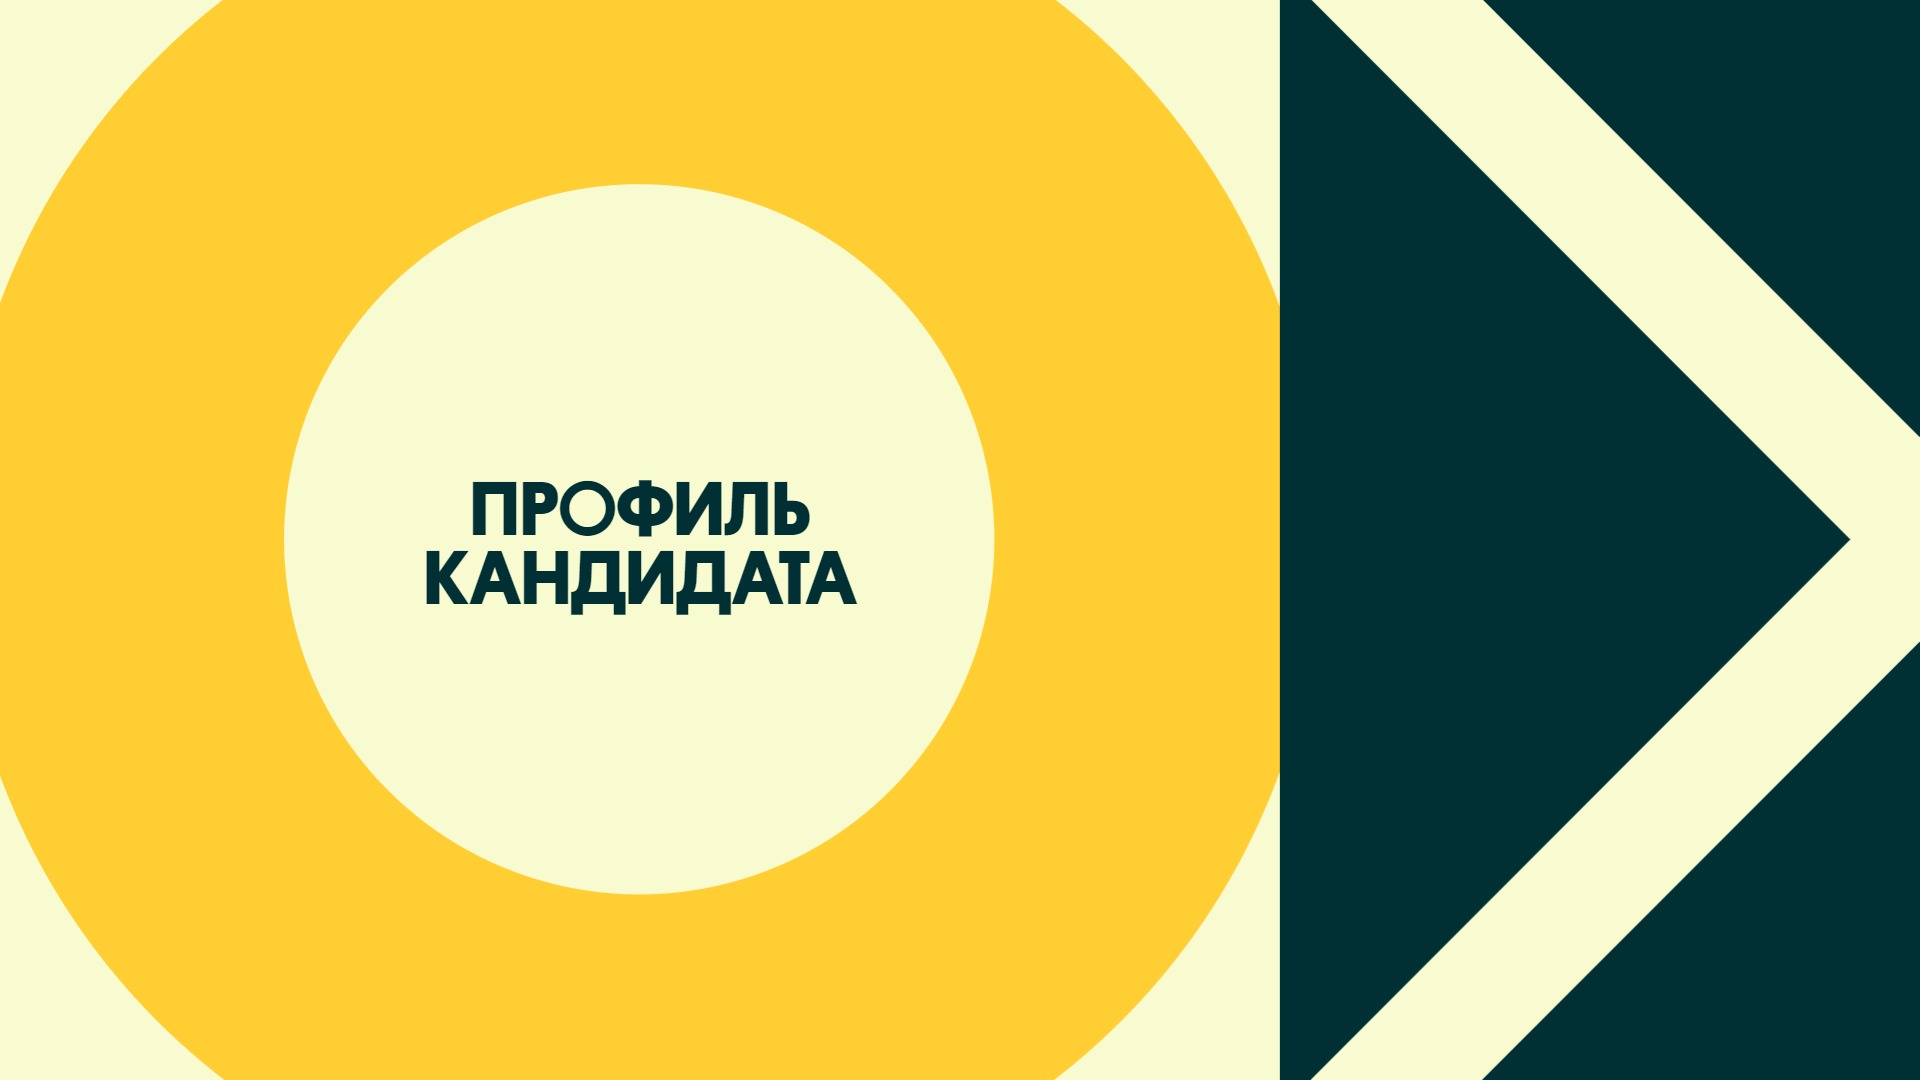 Профиль кандидата | OLX.ua